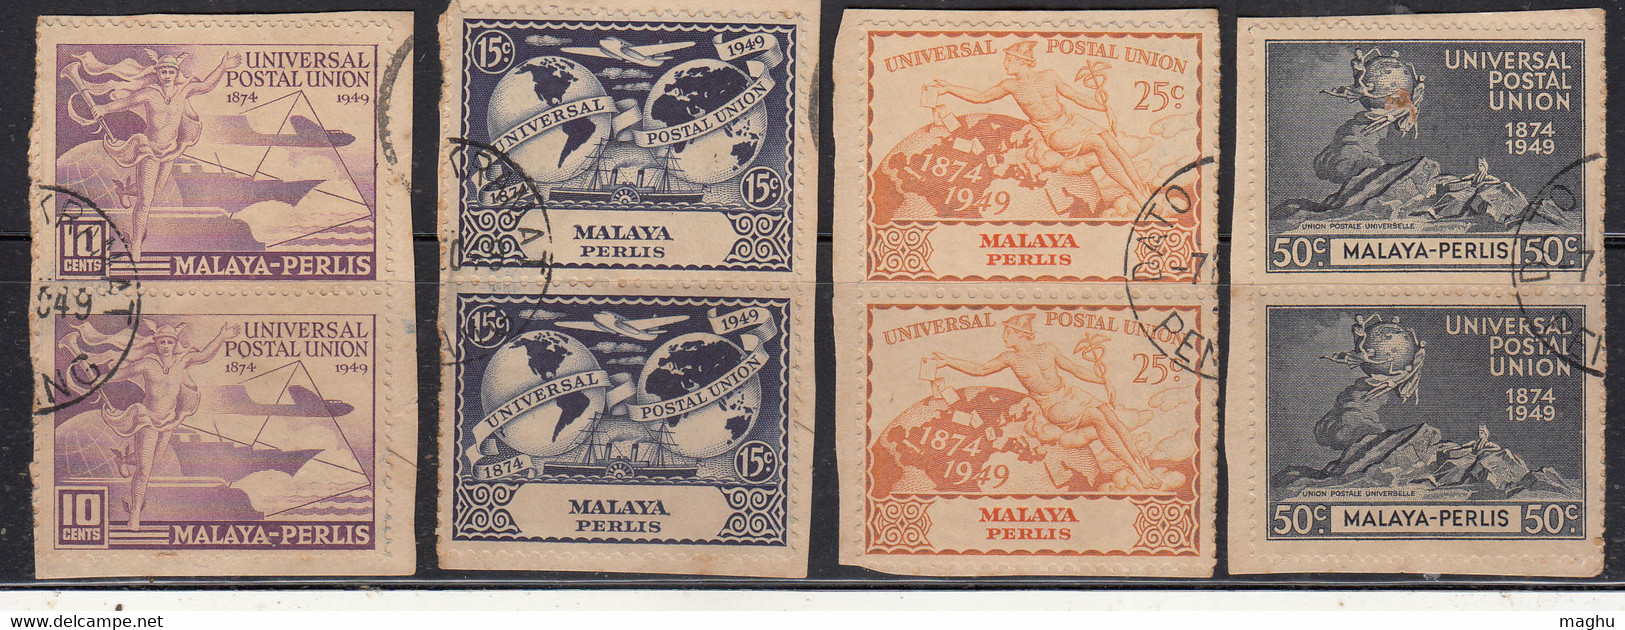 Perlis Used 1949, Pairs On Pies, Set Of 4, UPU. U.P.U., Universal Postal Union, Airplane, Ship, Globe, Malaya / Malaysia - Perlis